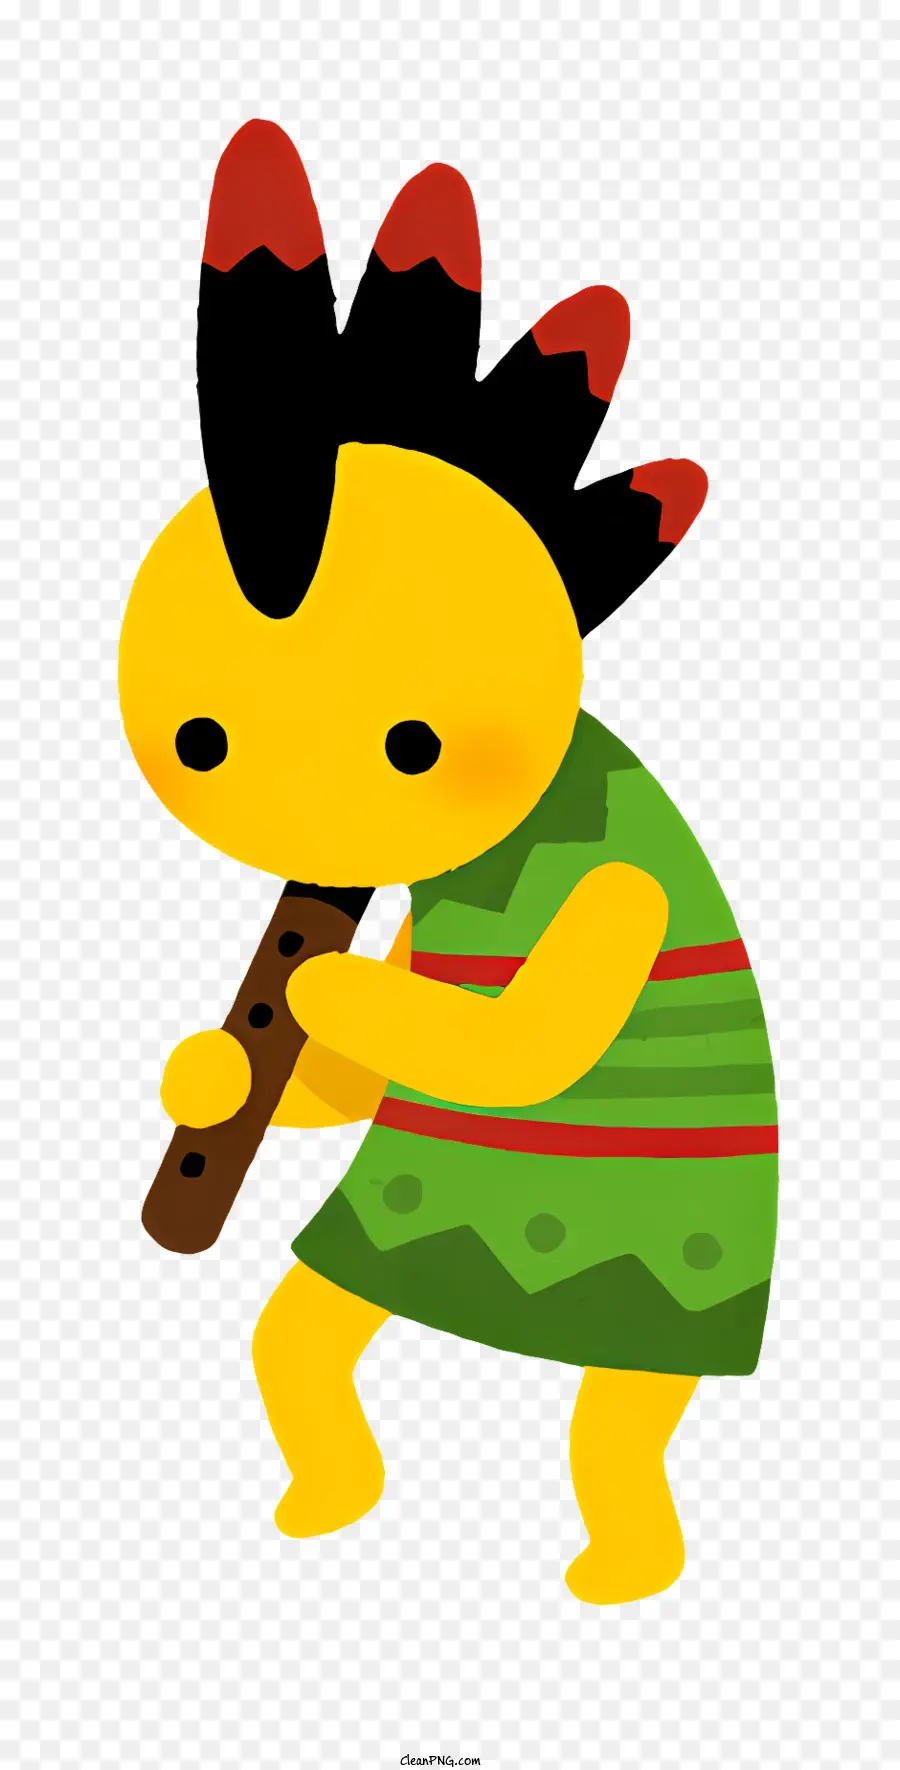 Fantasy Hình nhân vật hoạt hình nhân vật màu đỏ và màu xanh lá cây nhạc cụ - Hình ảnh hoạt hình chơi nhạc cụ với hai cây gậy